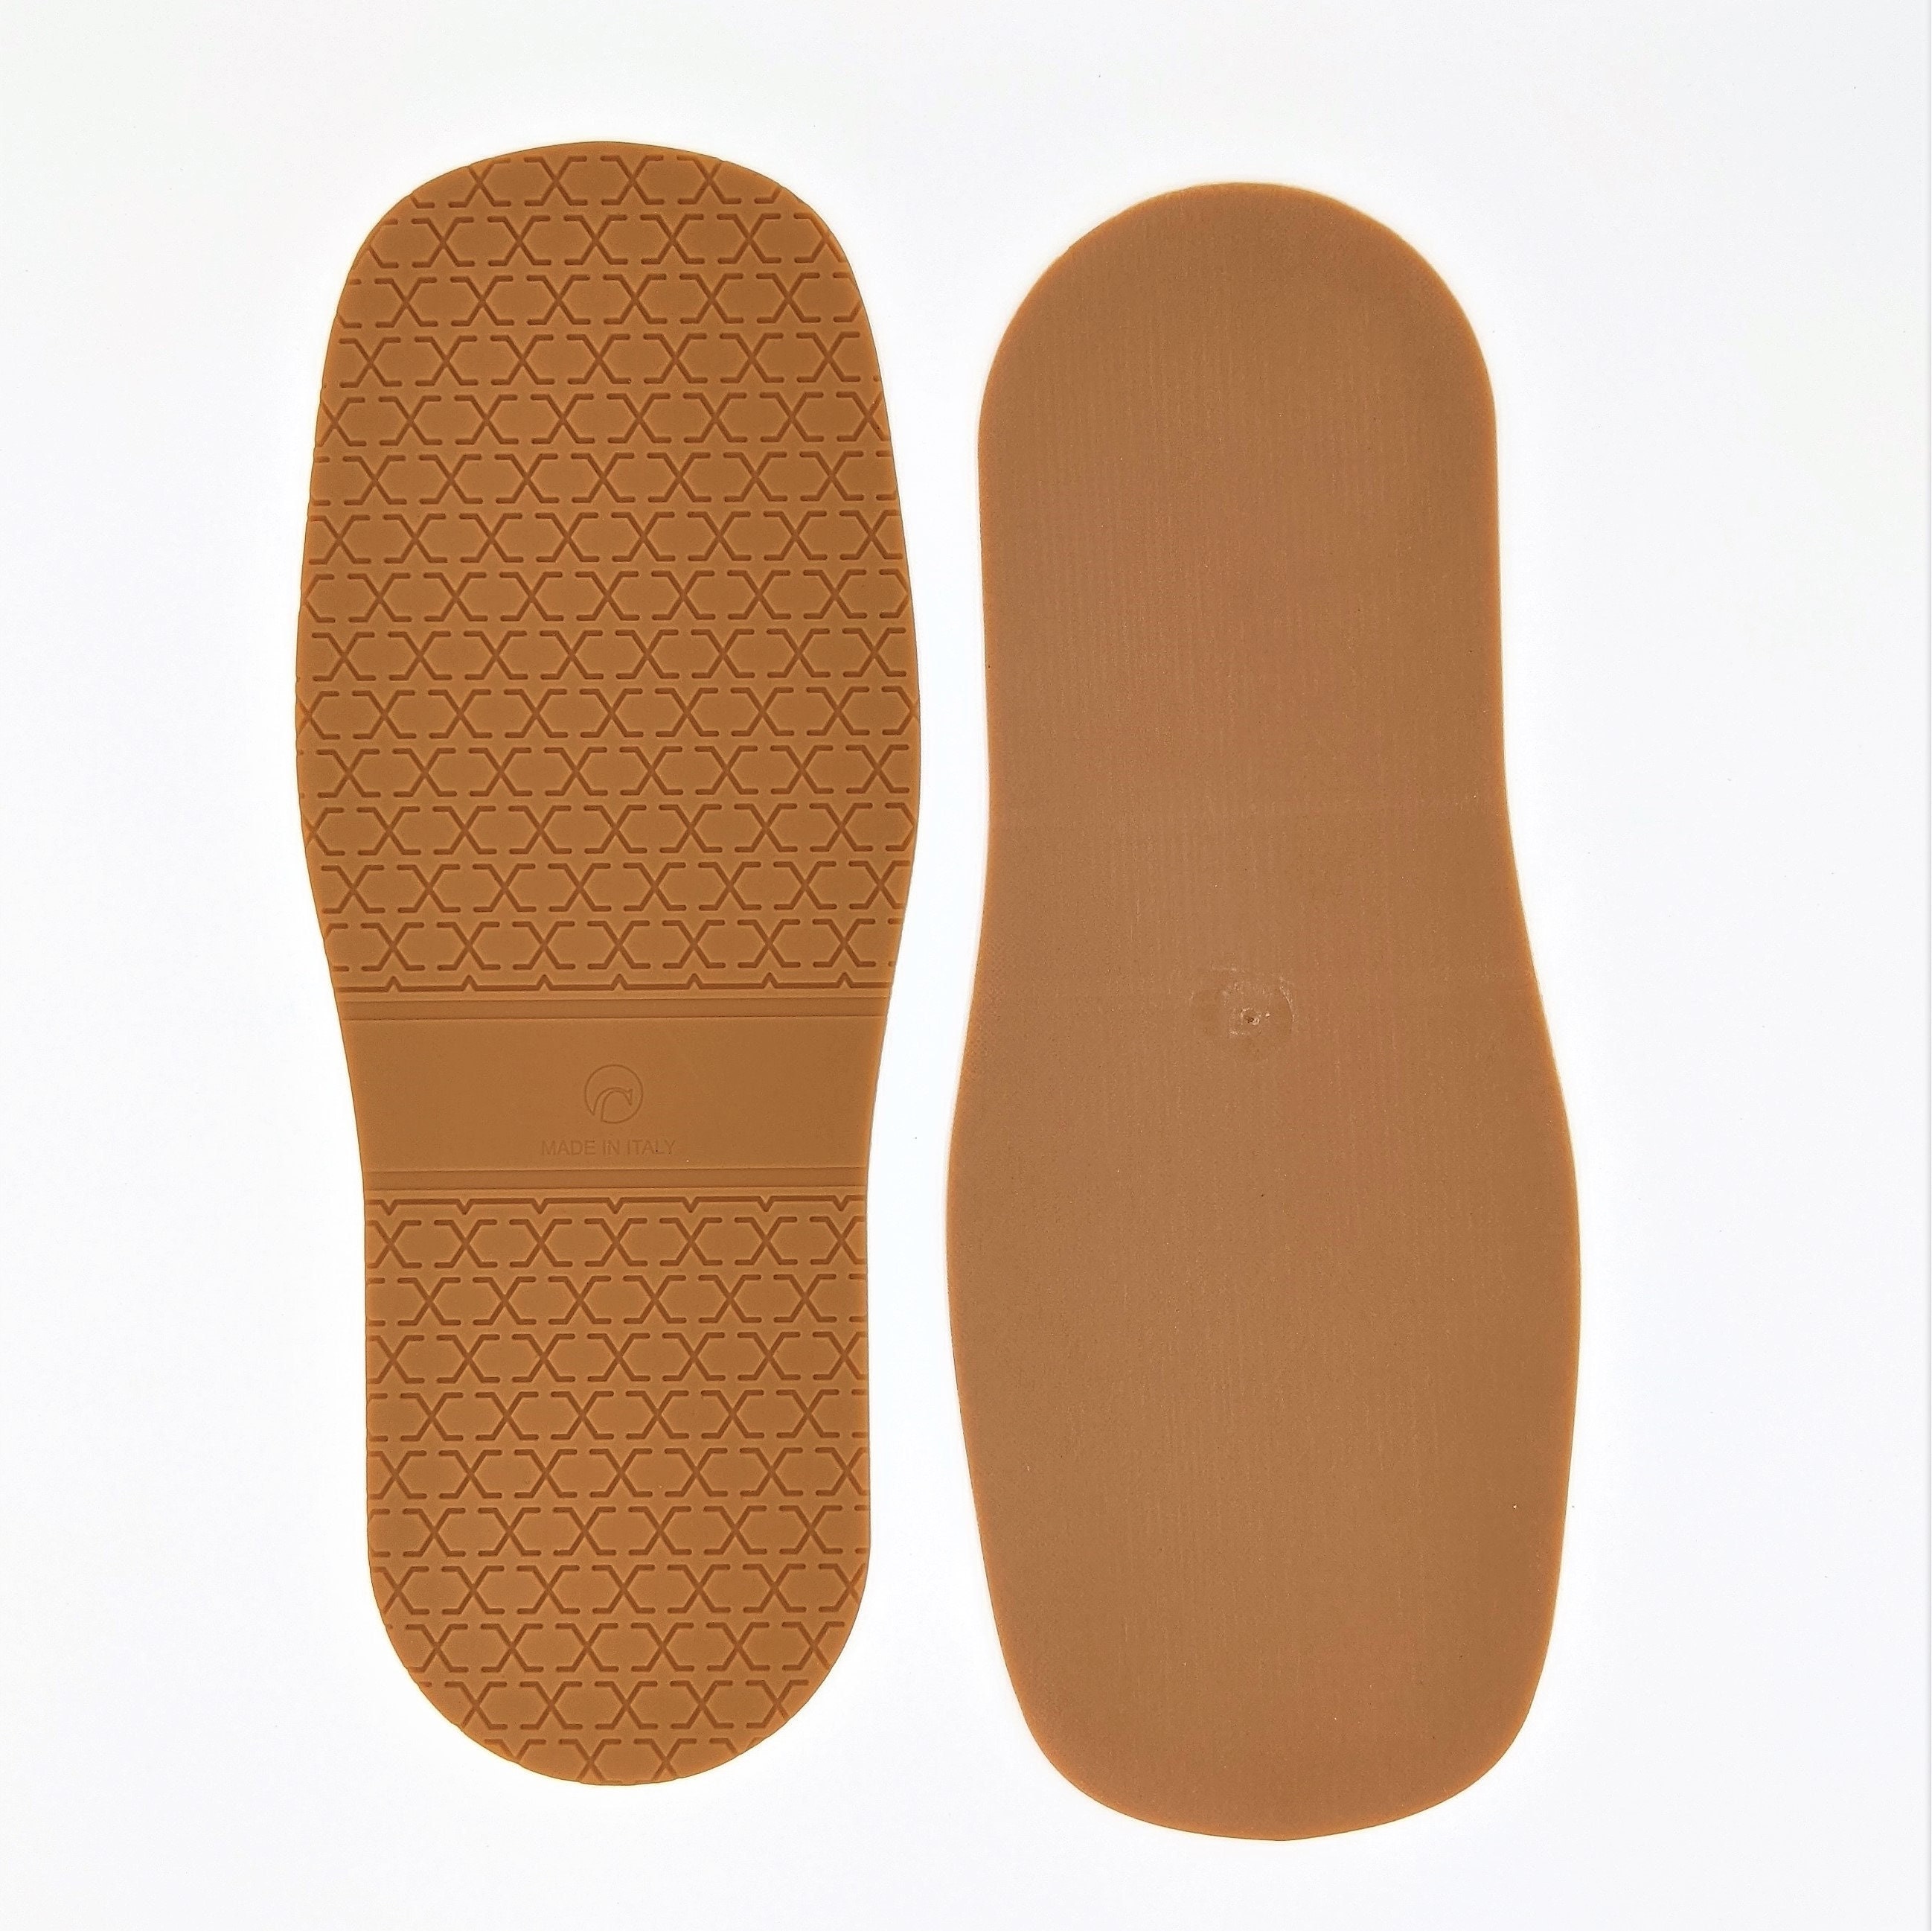 DE 210 Men Moulded Rubber Sole for Casual shoes replace sole